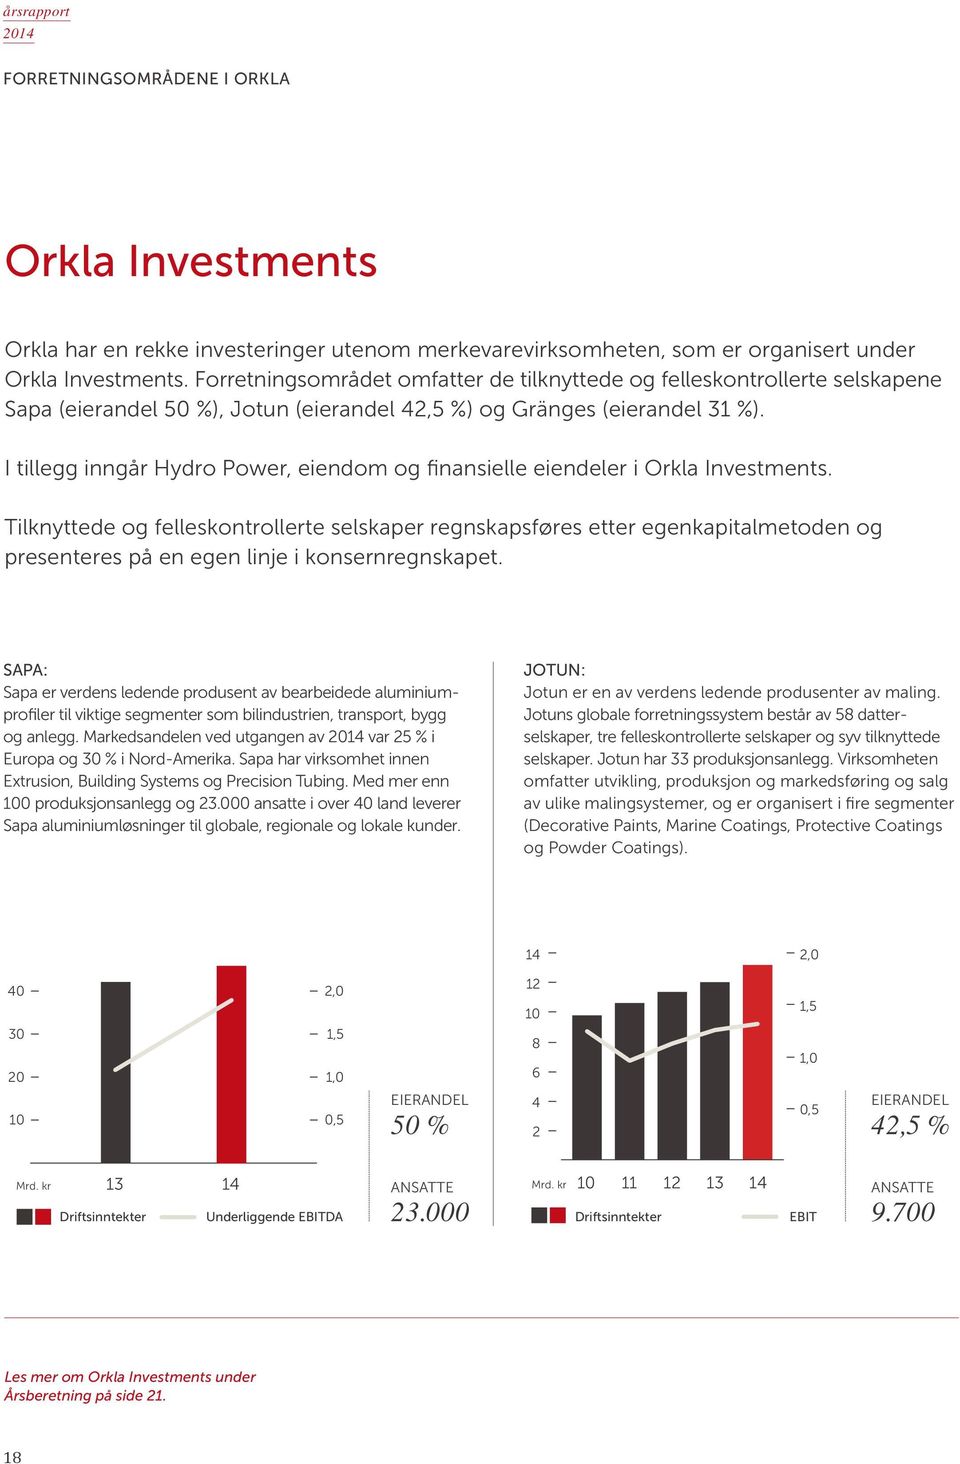 I tillegg inngår Hydro Power, eiendom og finansielle eiendeler i Orkla Investments.